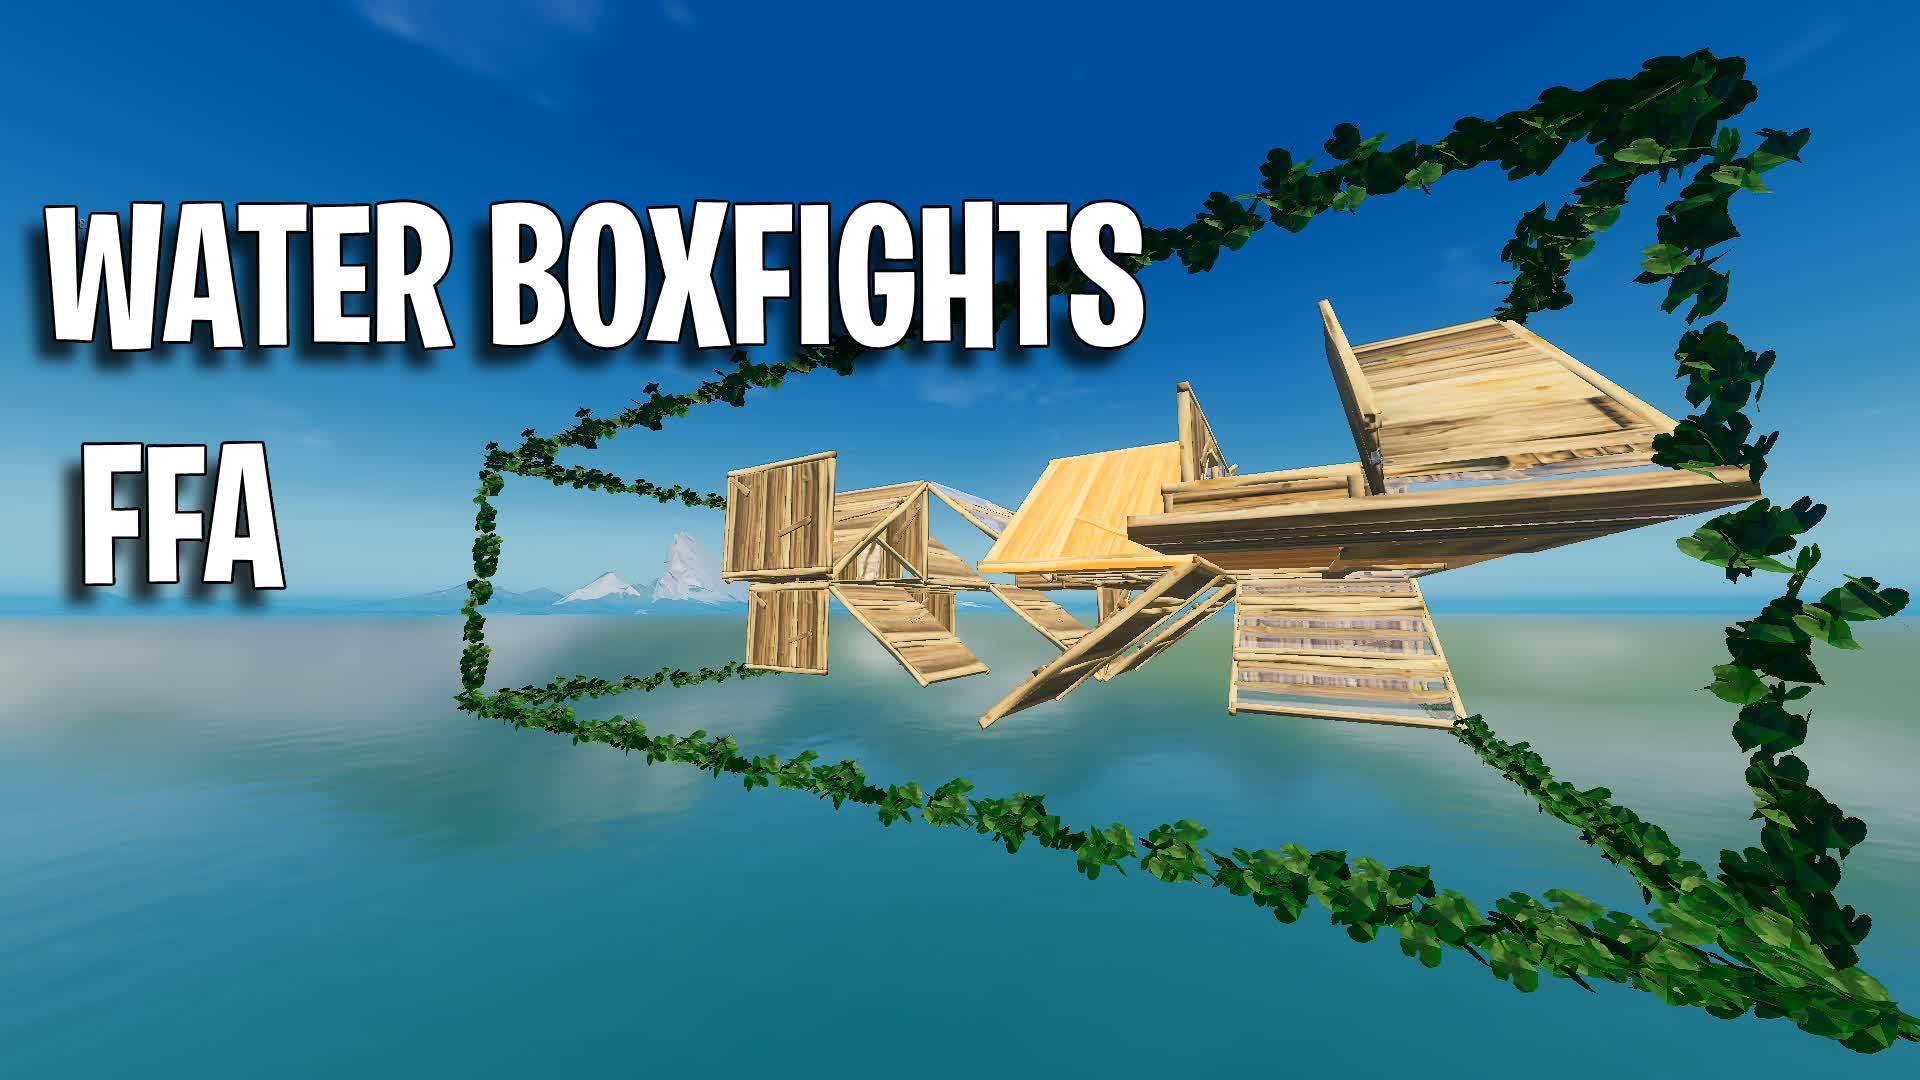 Water BoxFights FFA